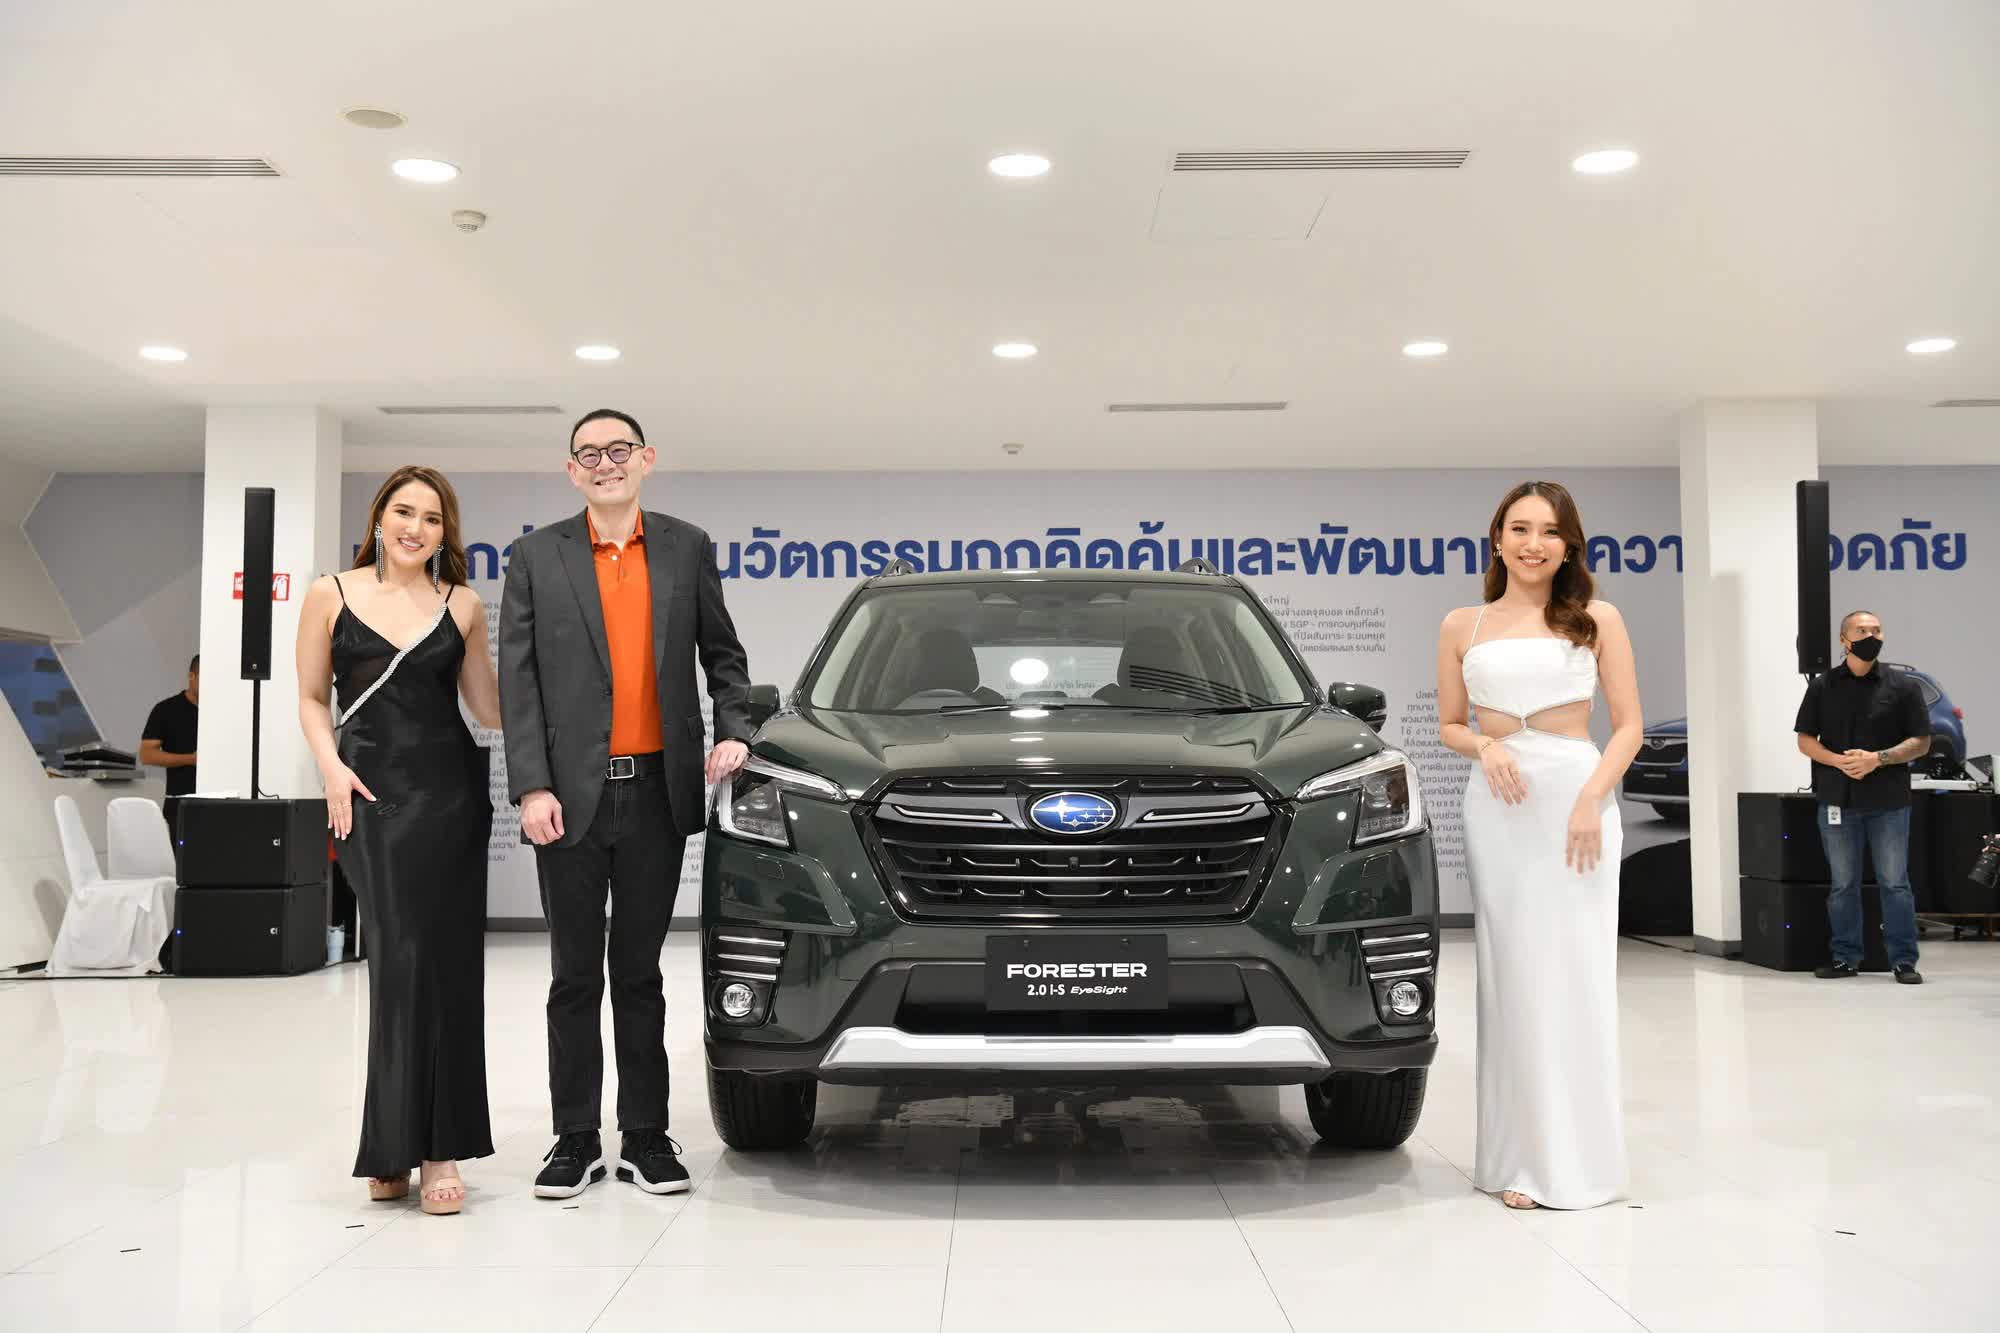 Subaru Forester - ‘Sầu riêng’ trong chợ xe Việt Nam  - Ảnh 2.